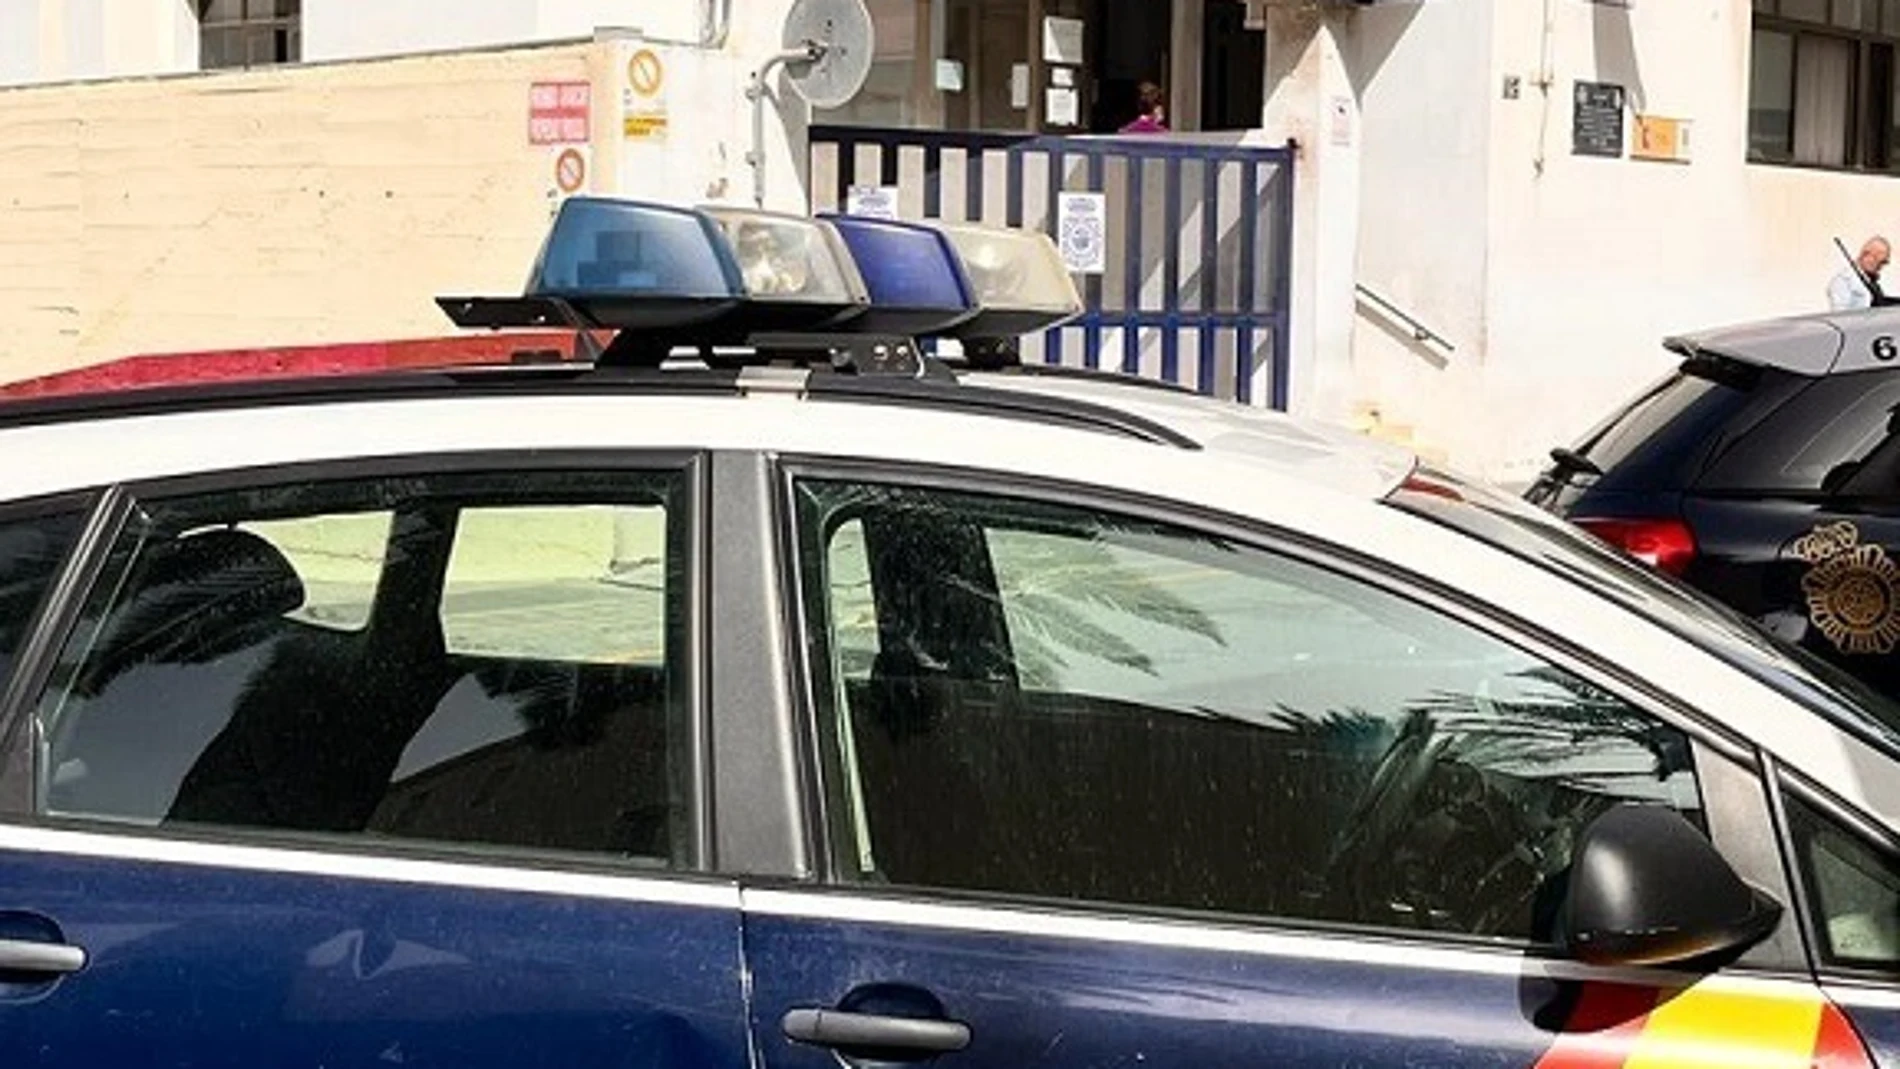 Comisaria de Policía Nacional de Torremolinos (Málaga).